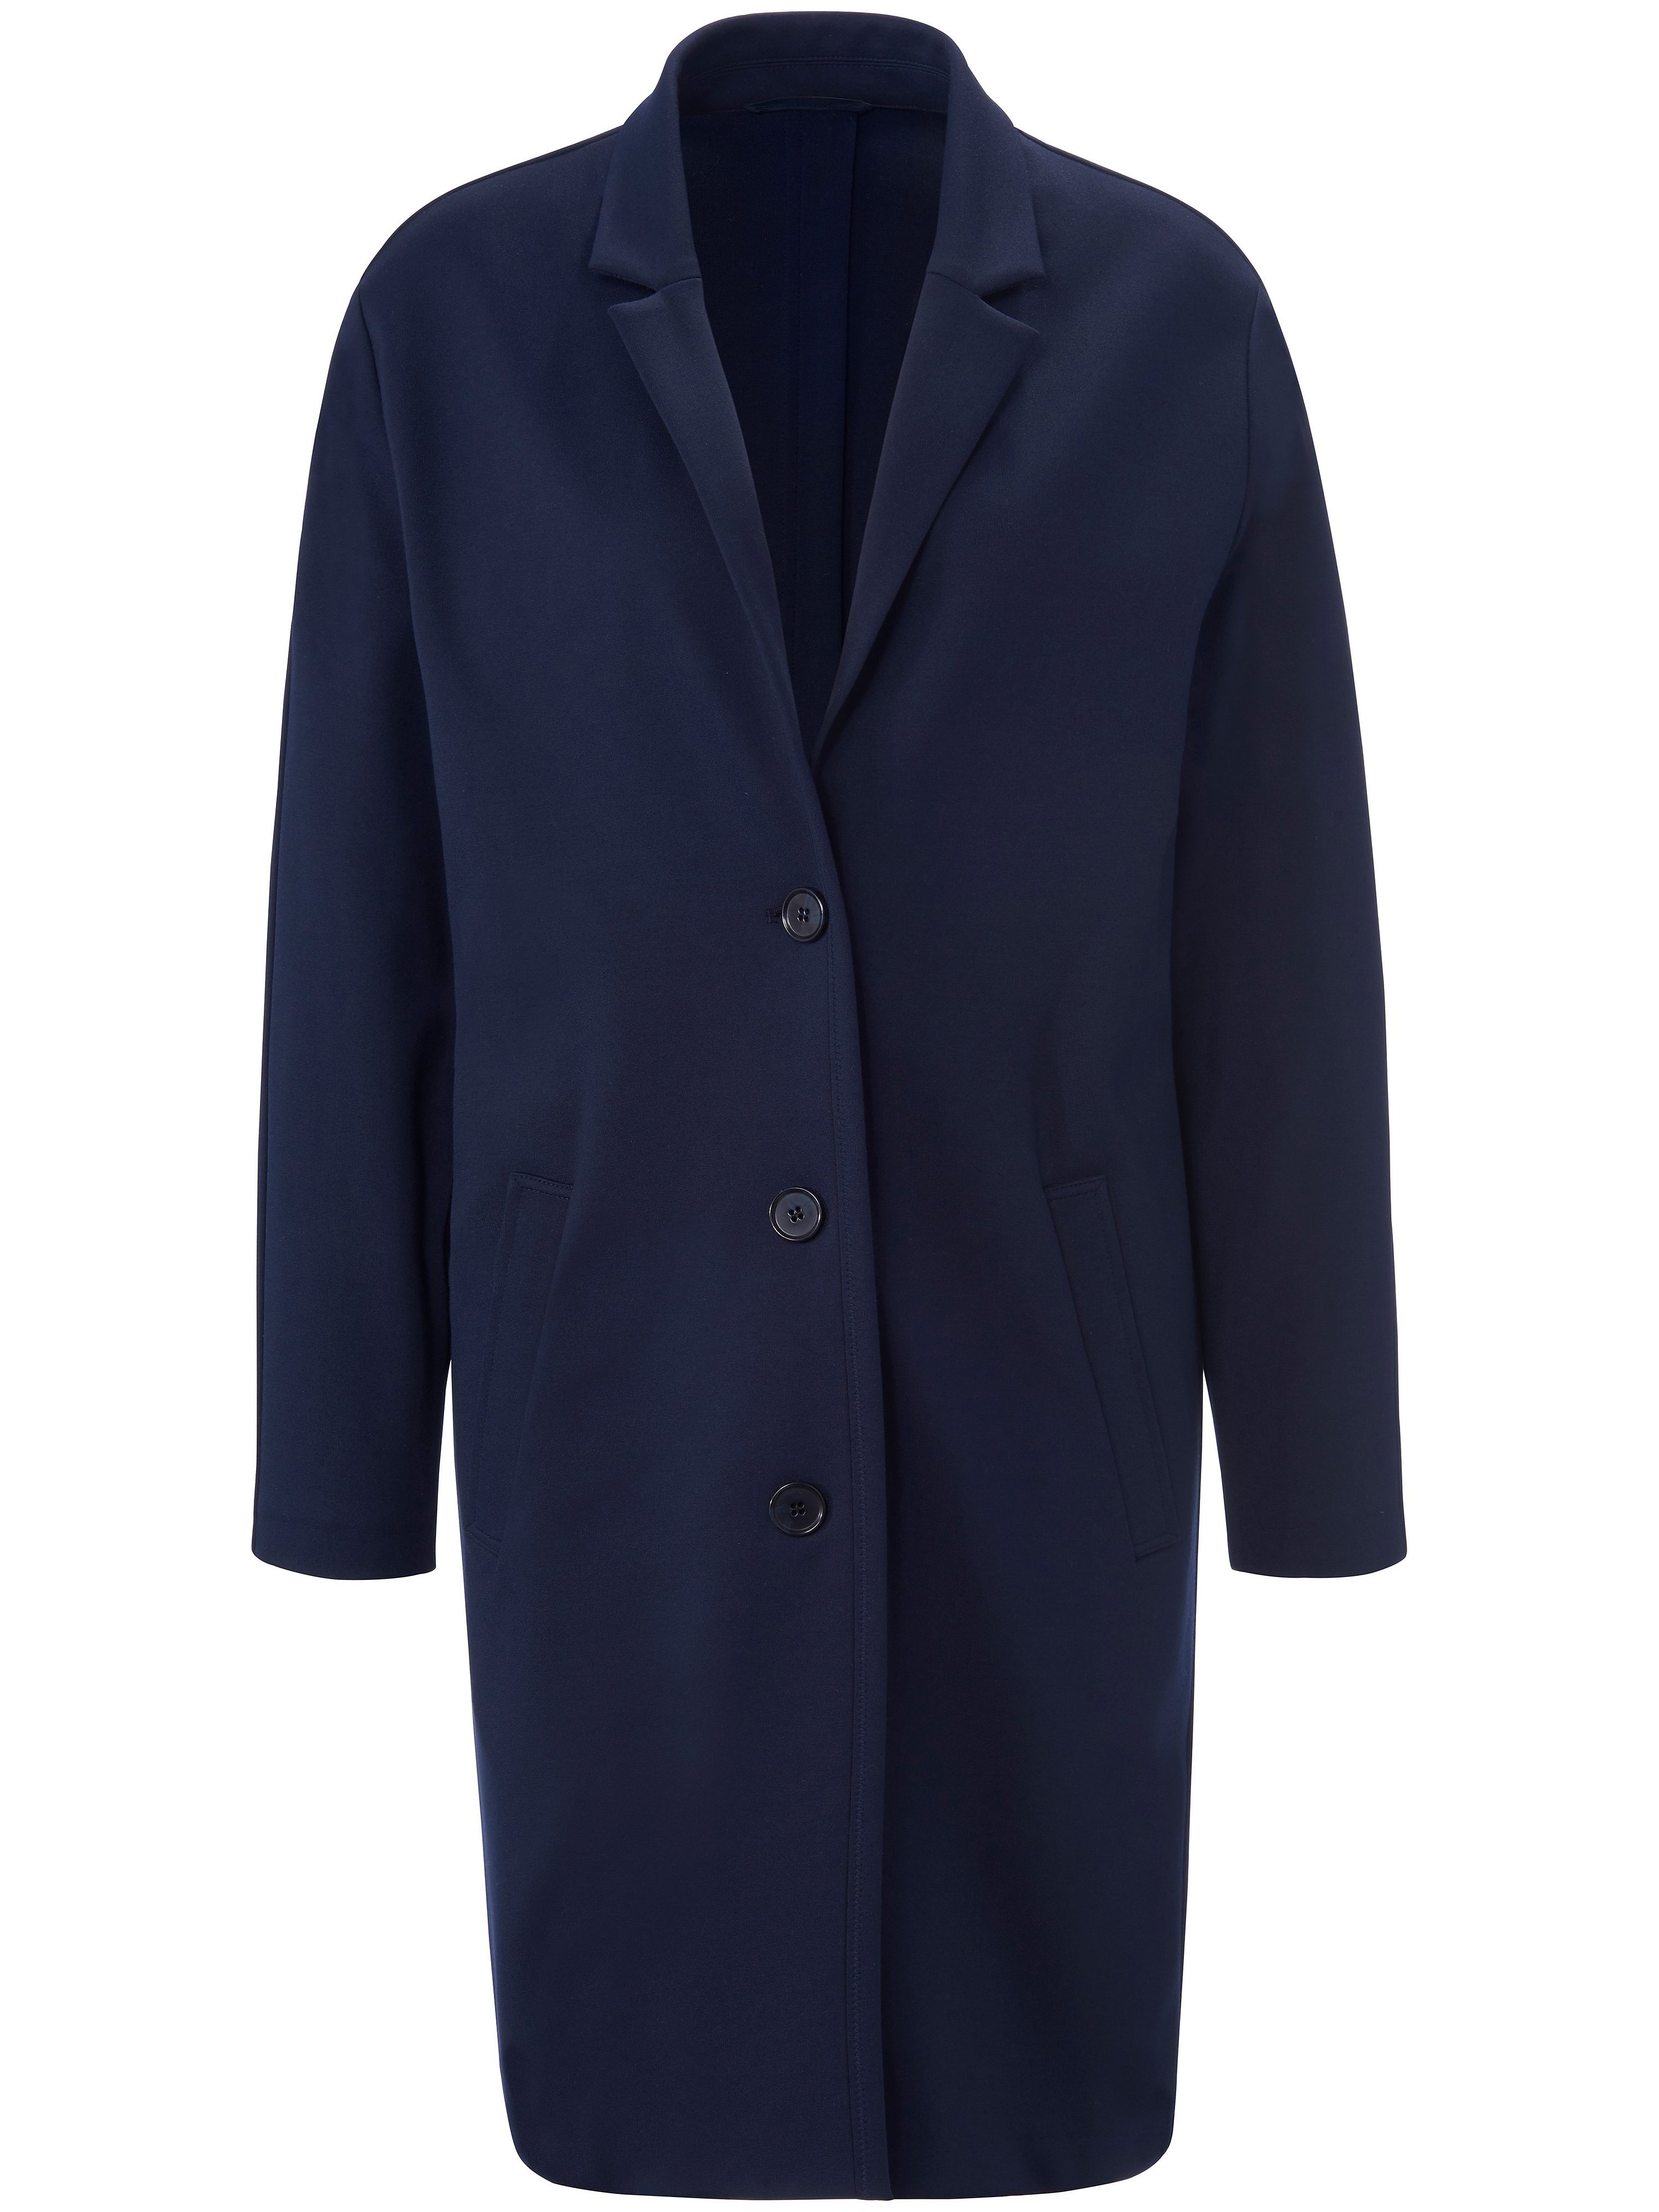 Le manteau jersey avec manches longues  tRUE STANDARD bleu taille 46